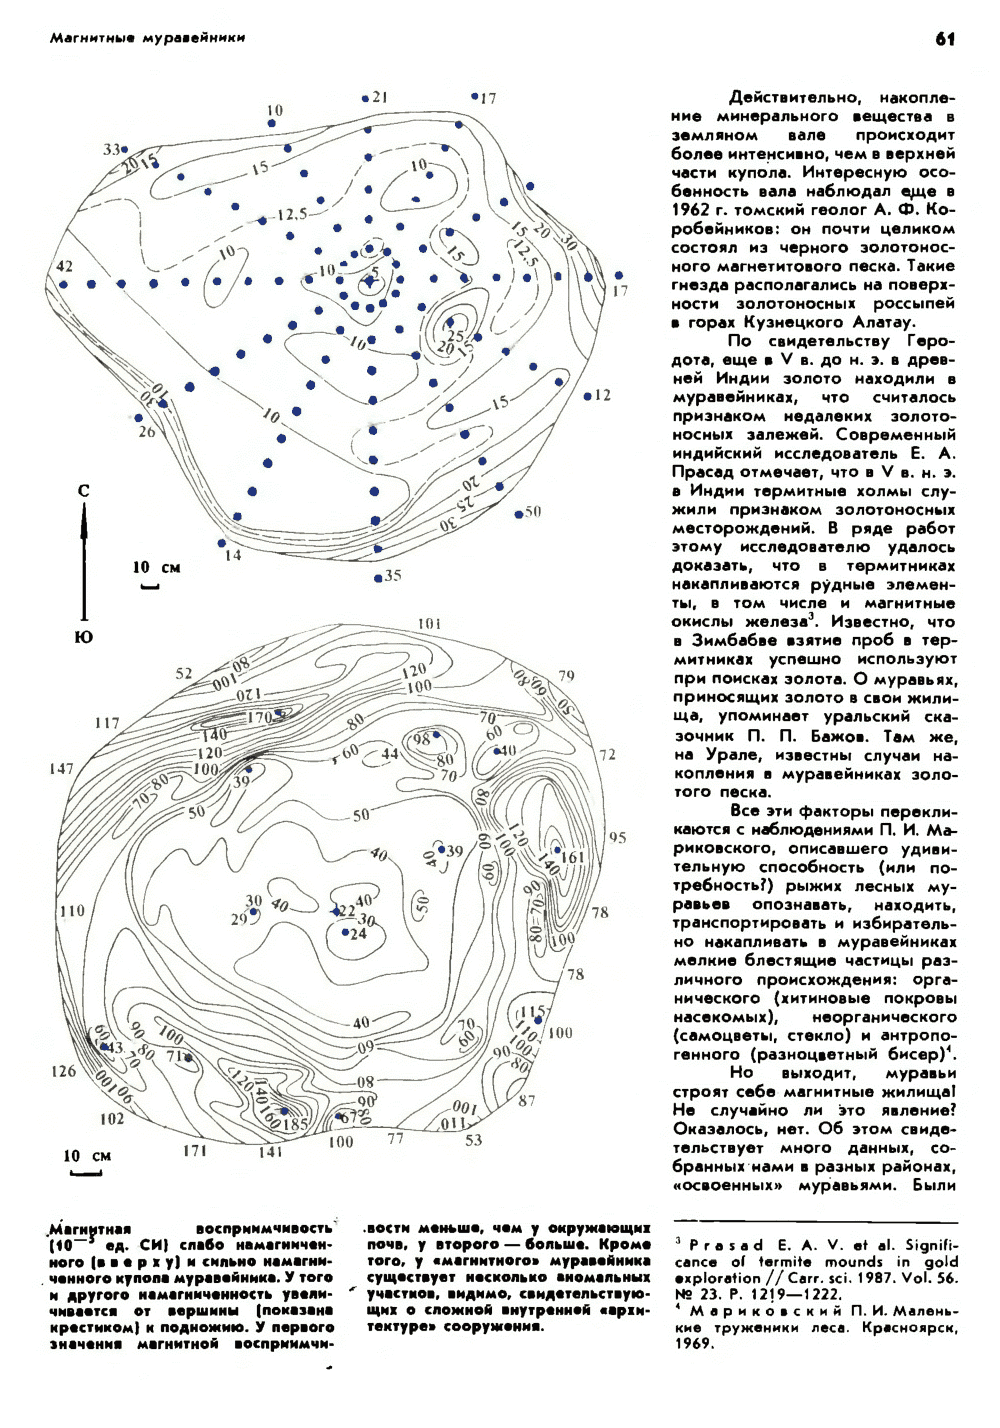 Магнитные муравейники. Ф. Б. Бакшт. Природа, 1990, №7, с.60-63. Фотокопия №2